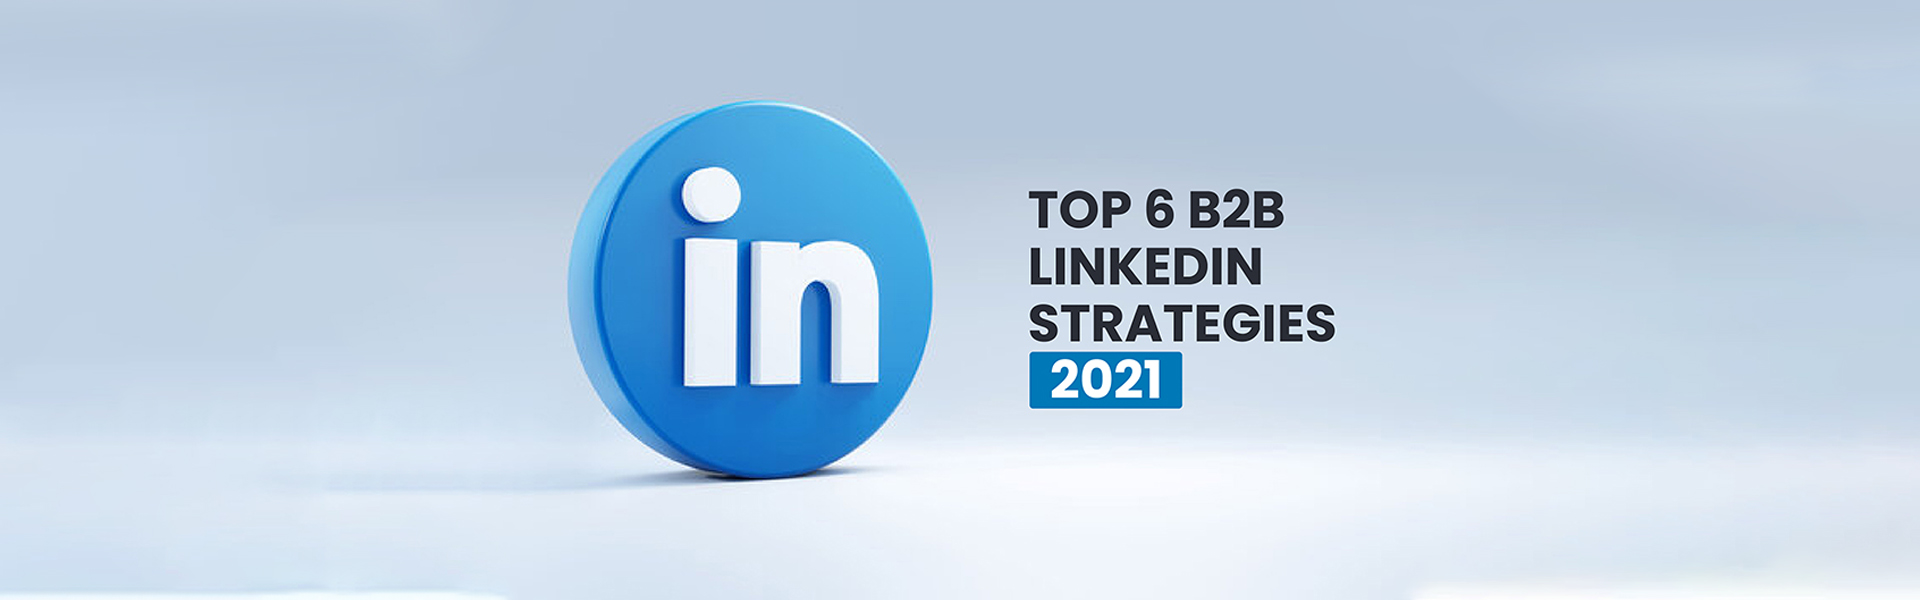 B2B LinkedIn strategies